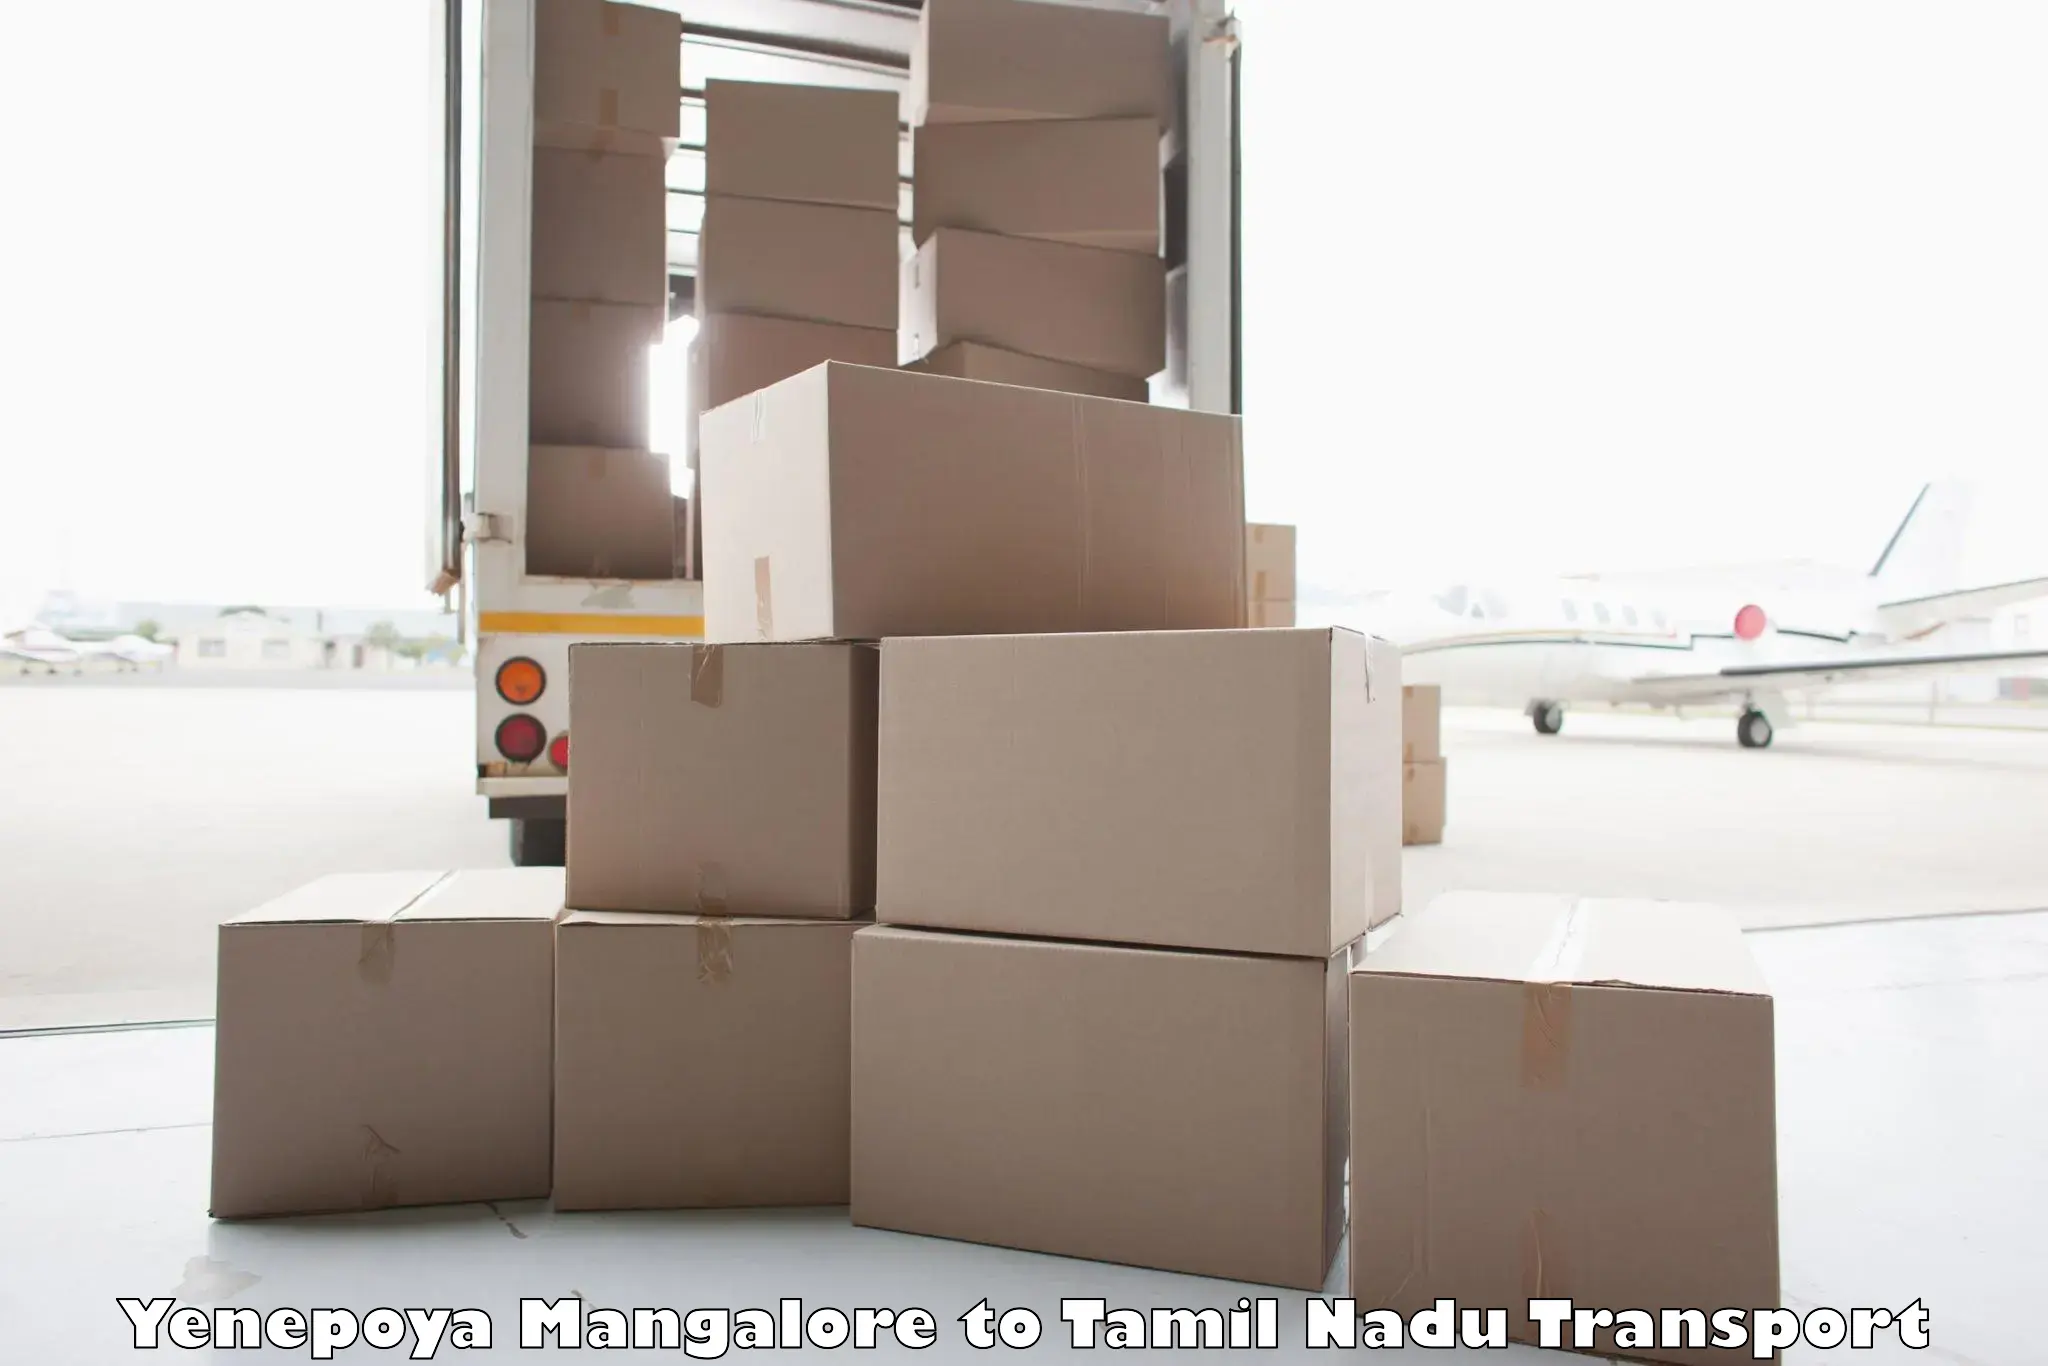 Cargo train transport services Yenepoya Mangalore to Parangimalai